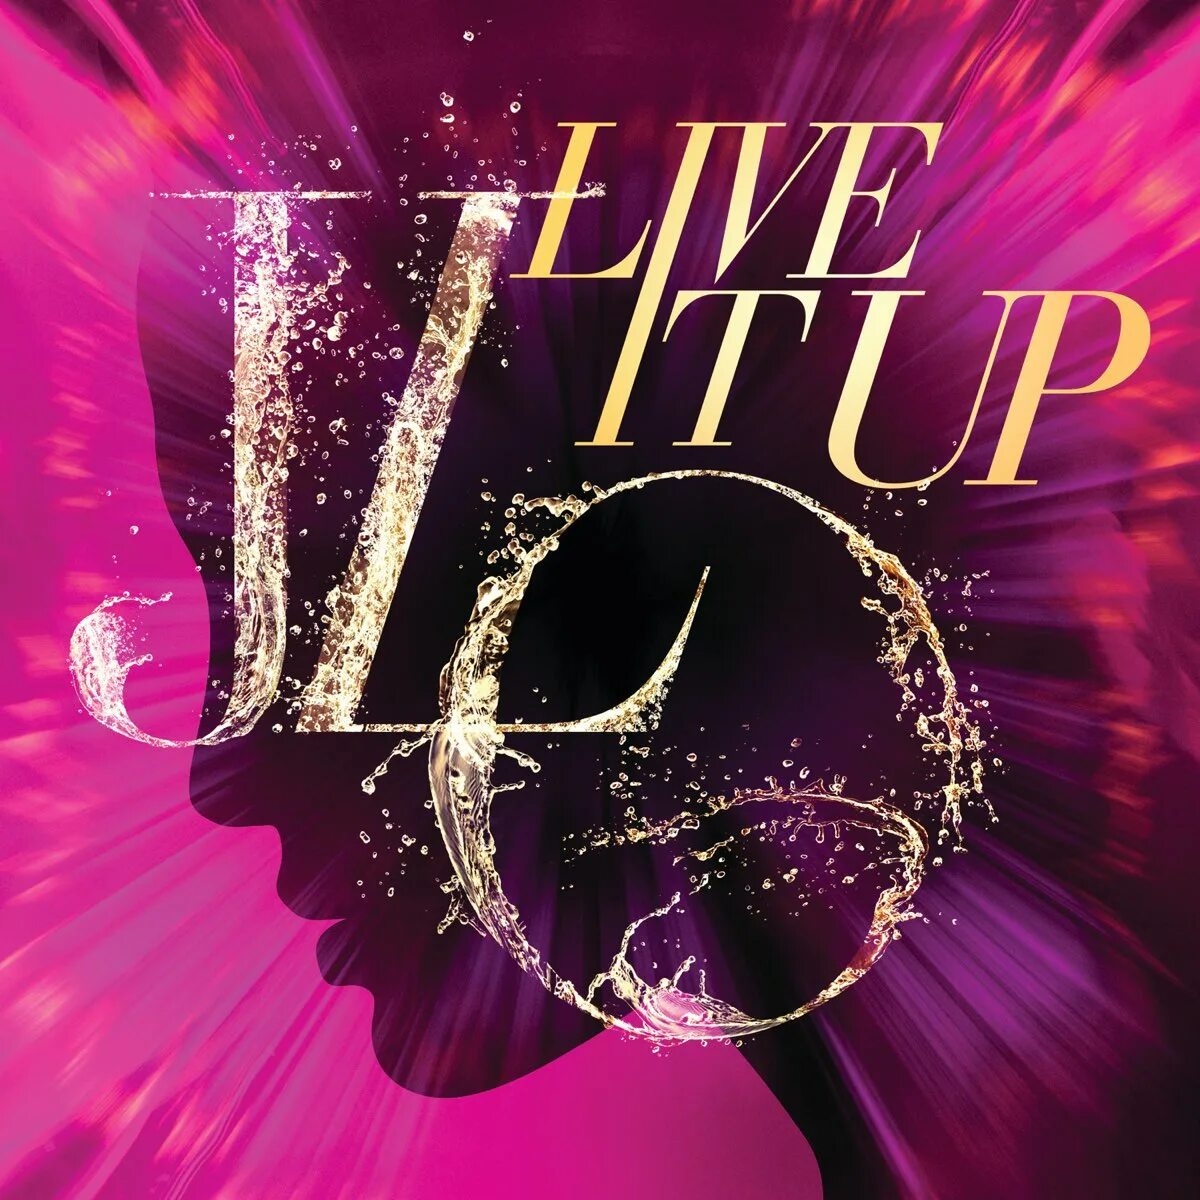 Live it up 2. Jennifer Lopez Live it up. Jennifer Lopez Live. Jennifer Lopez Live it up ft. Pitbull. Jennifer Lopez & Pitbull ~ Live it up.